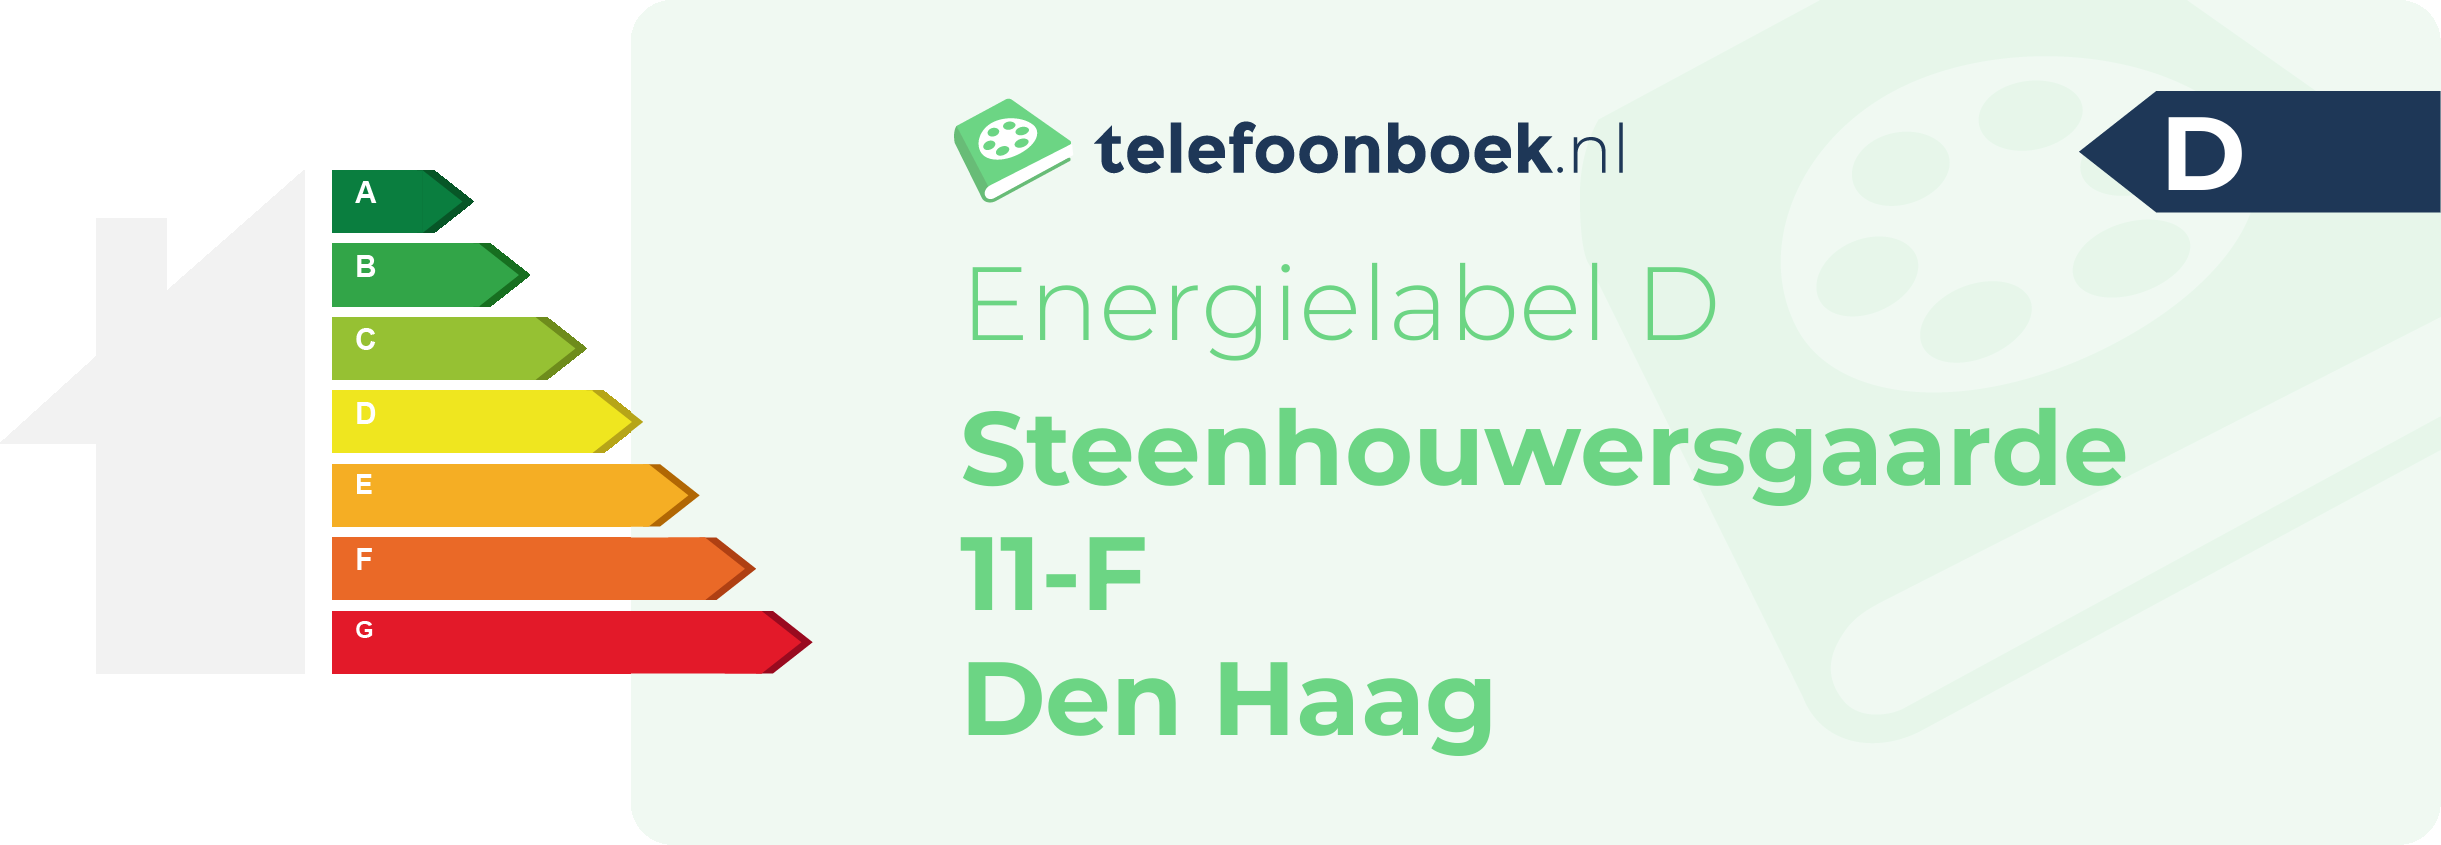 Energielabel Steenhouwersgaarde 11-F Den Haag